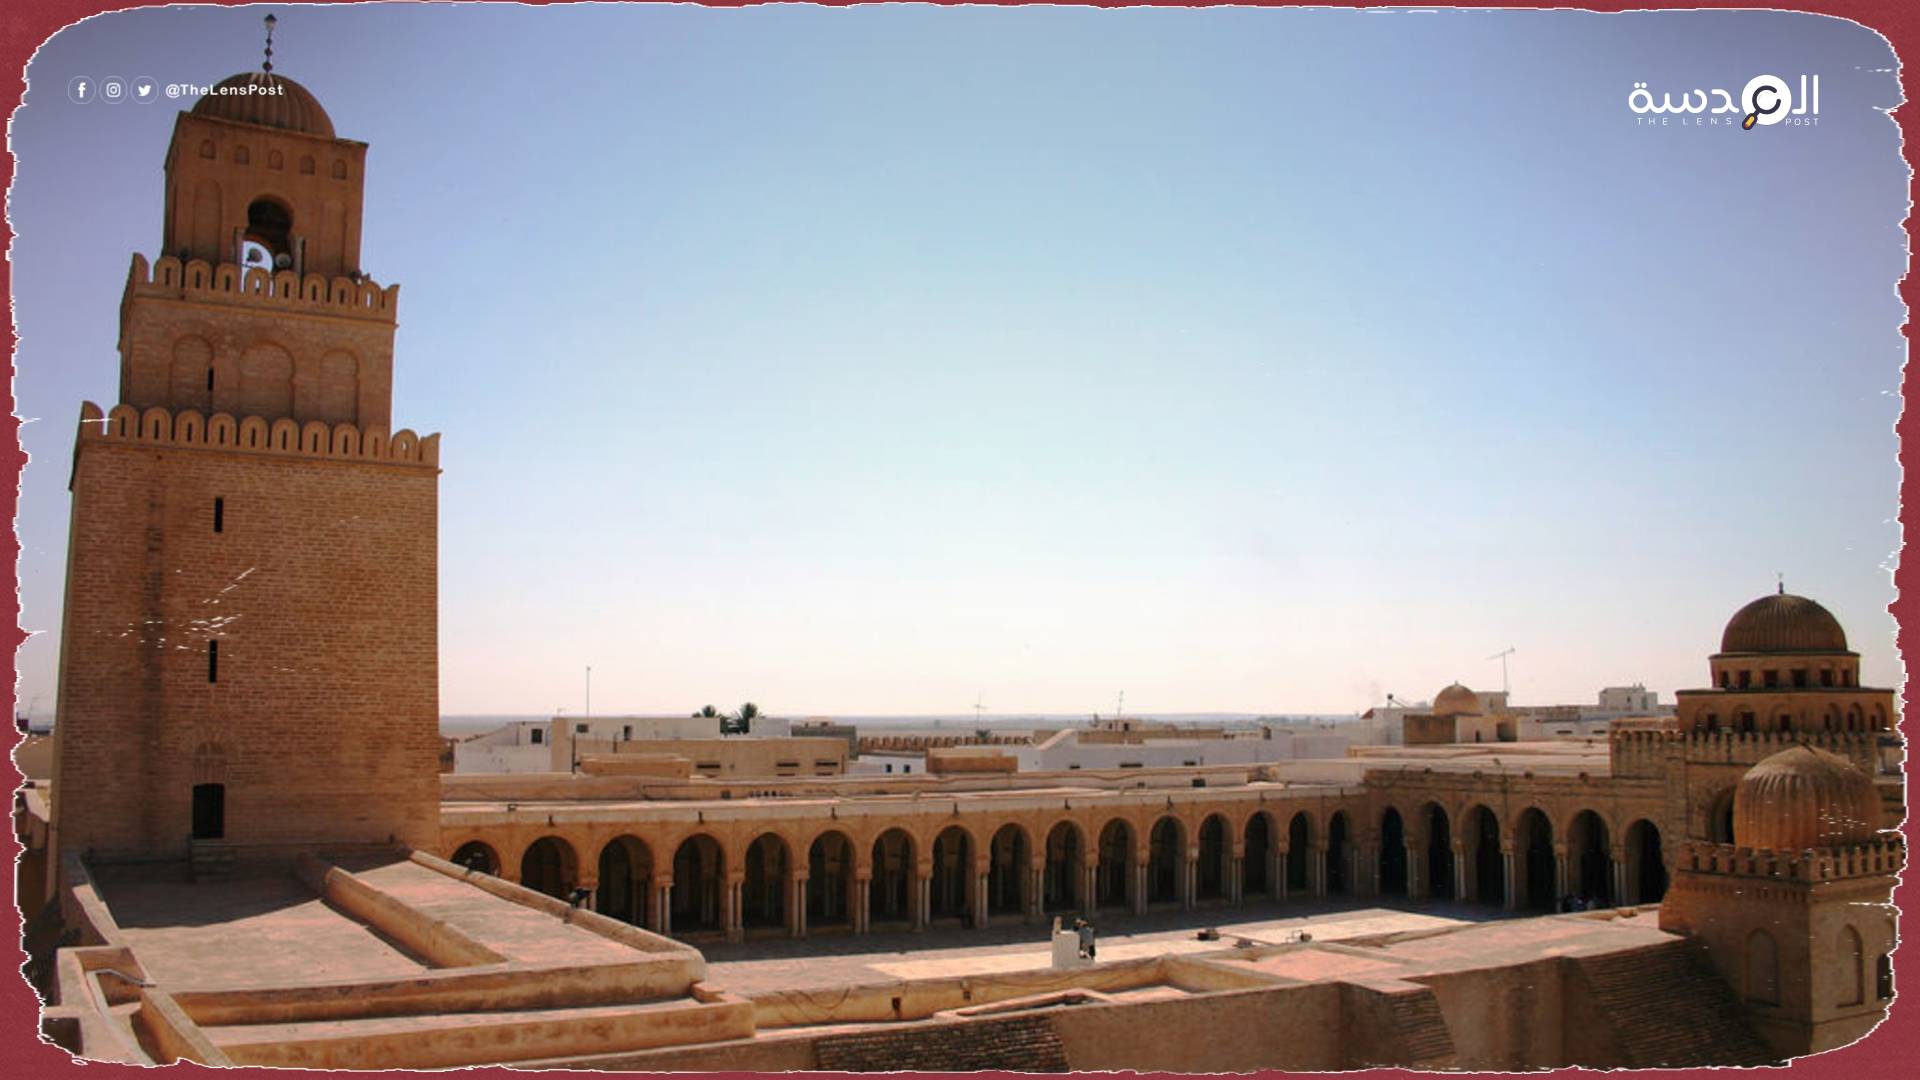 عزل إمام مسجد في تونس بعد تلاوته آية بها لفظ "انقلاب"